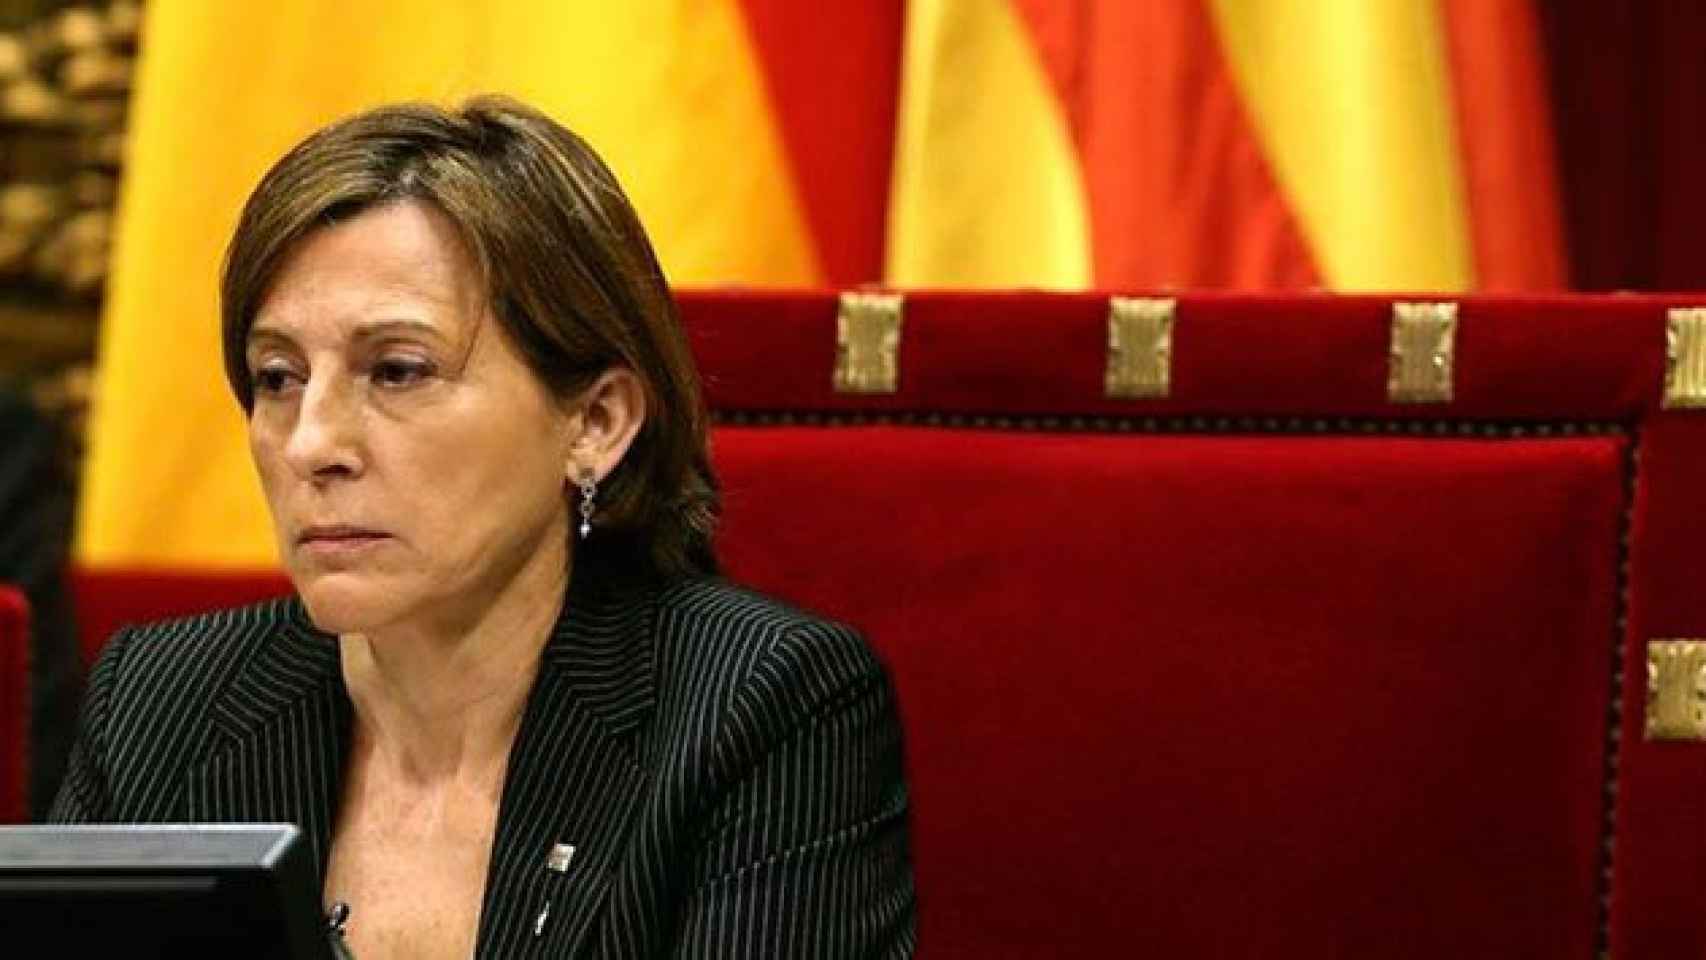 La presidenta del Parlamento de Cataluña, Carme Forcadell, en una imagen de archivo / EFE